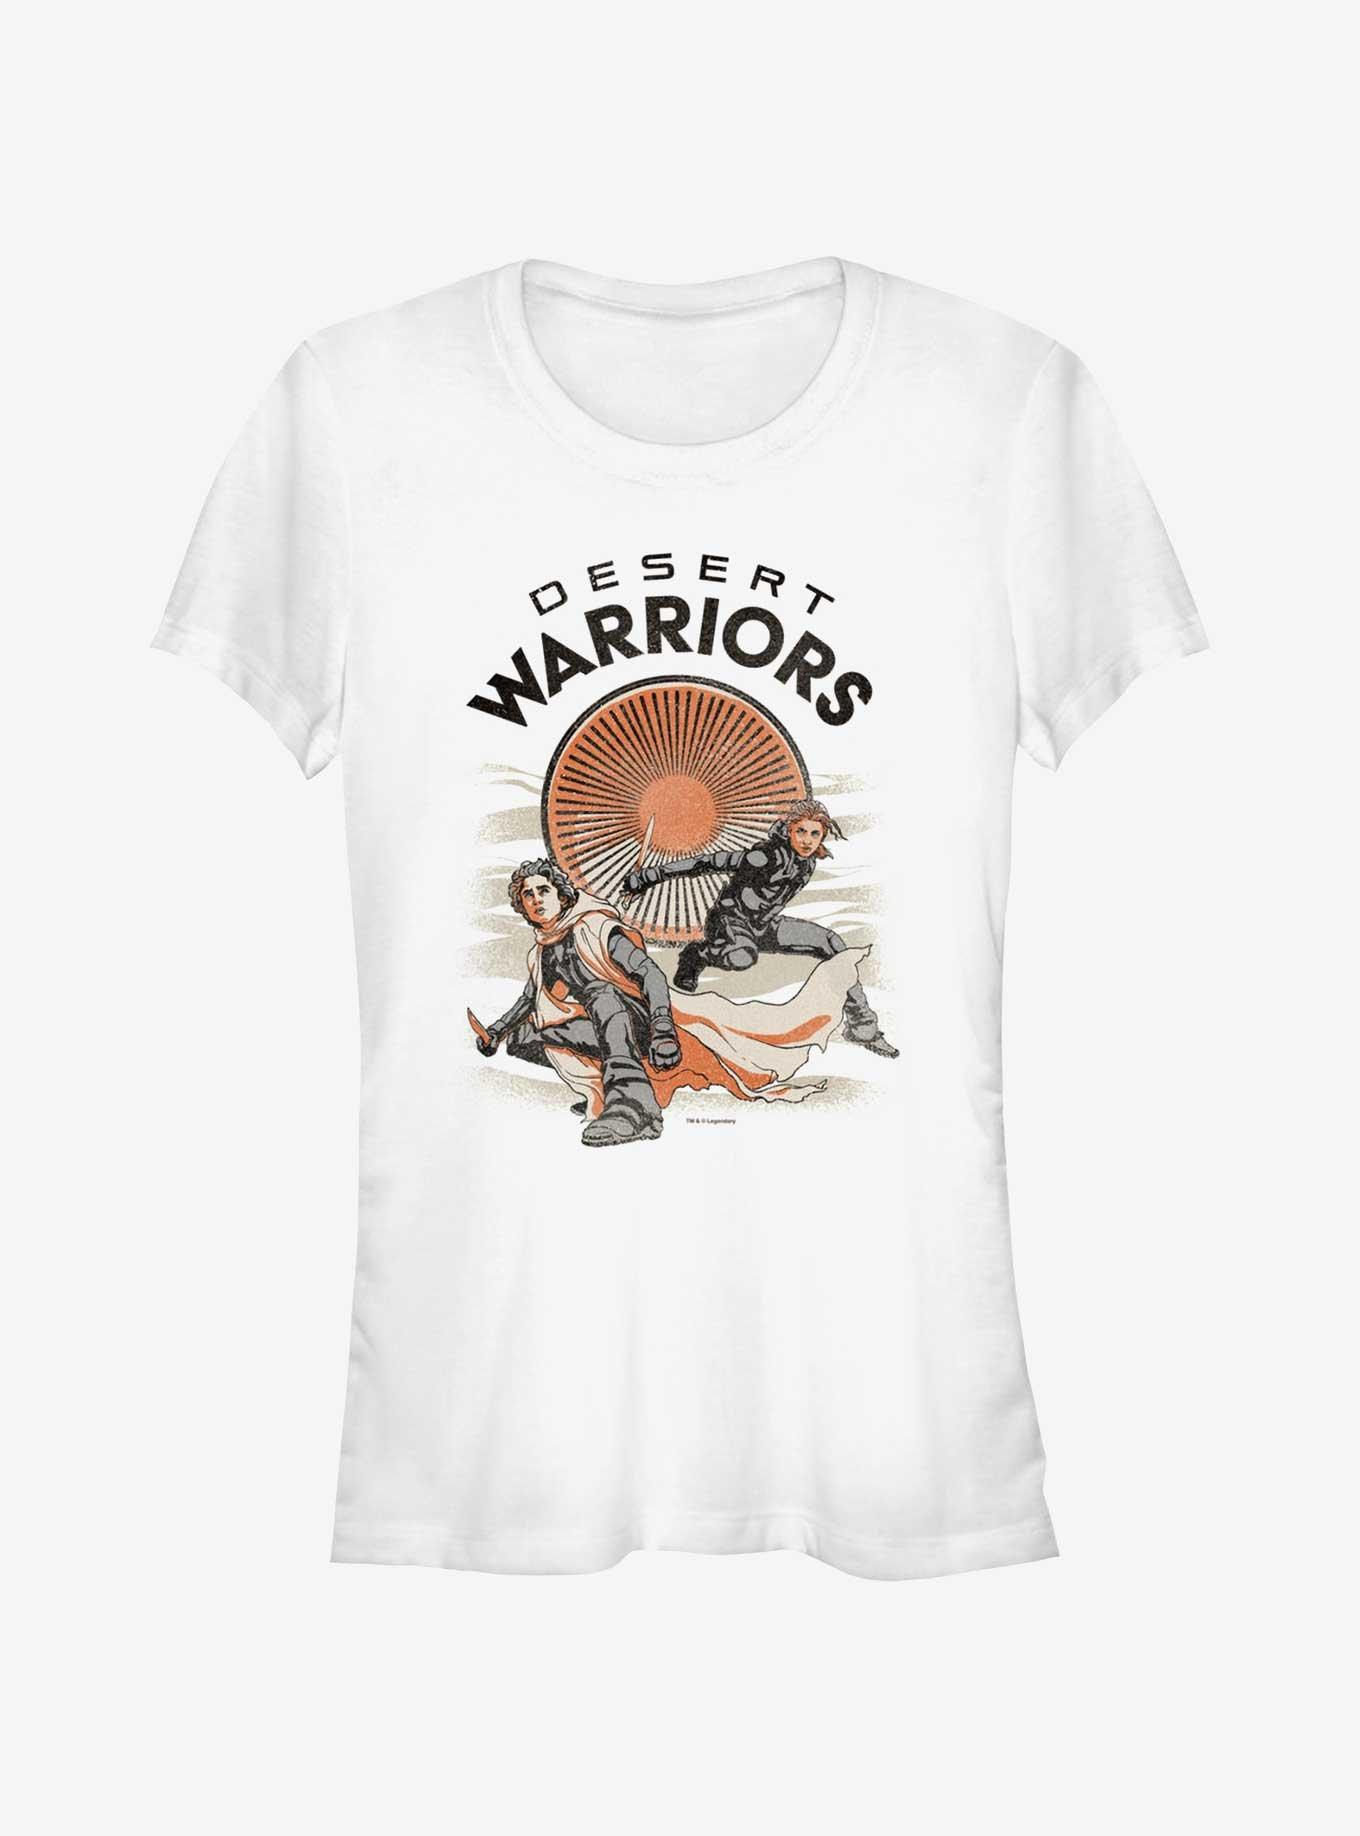 Dune: Part Two Desert Warriors Girls T-Shirt, WHITE, hi-res